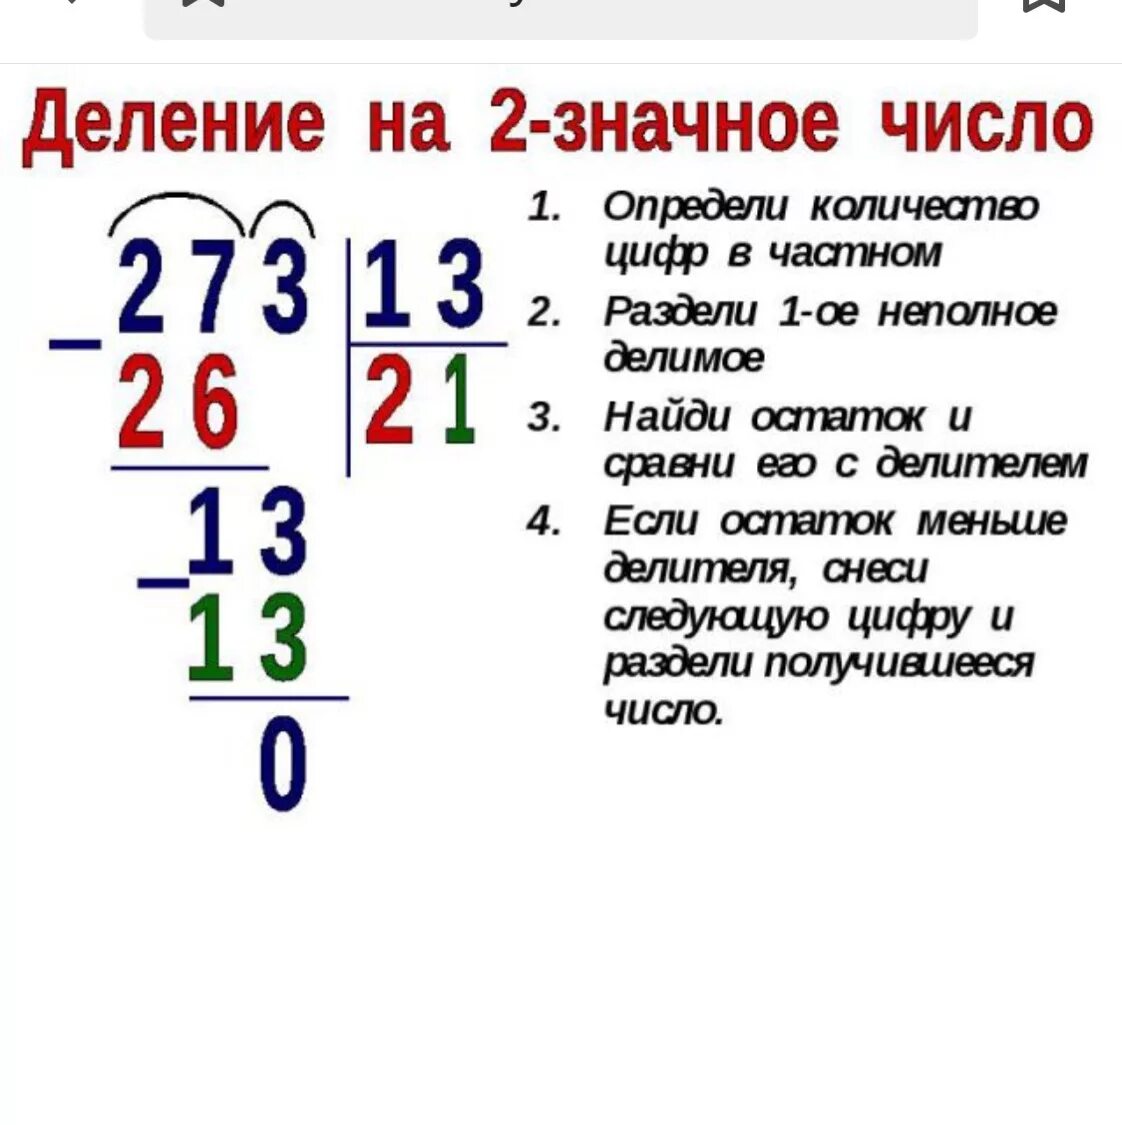 Как делить двузначные числа столбиком объяснение. Как решать деление в столбик на двузначное число. Деление трехзначных чисел на двузначные столбиком объяснение. Как научить ребёнка делению в столбик 3.